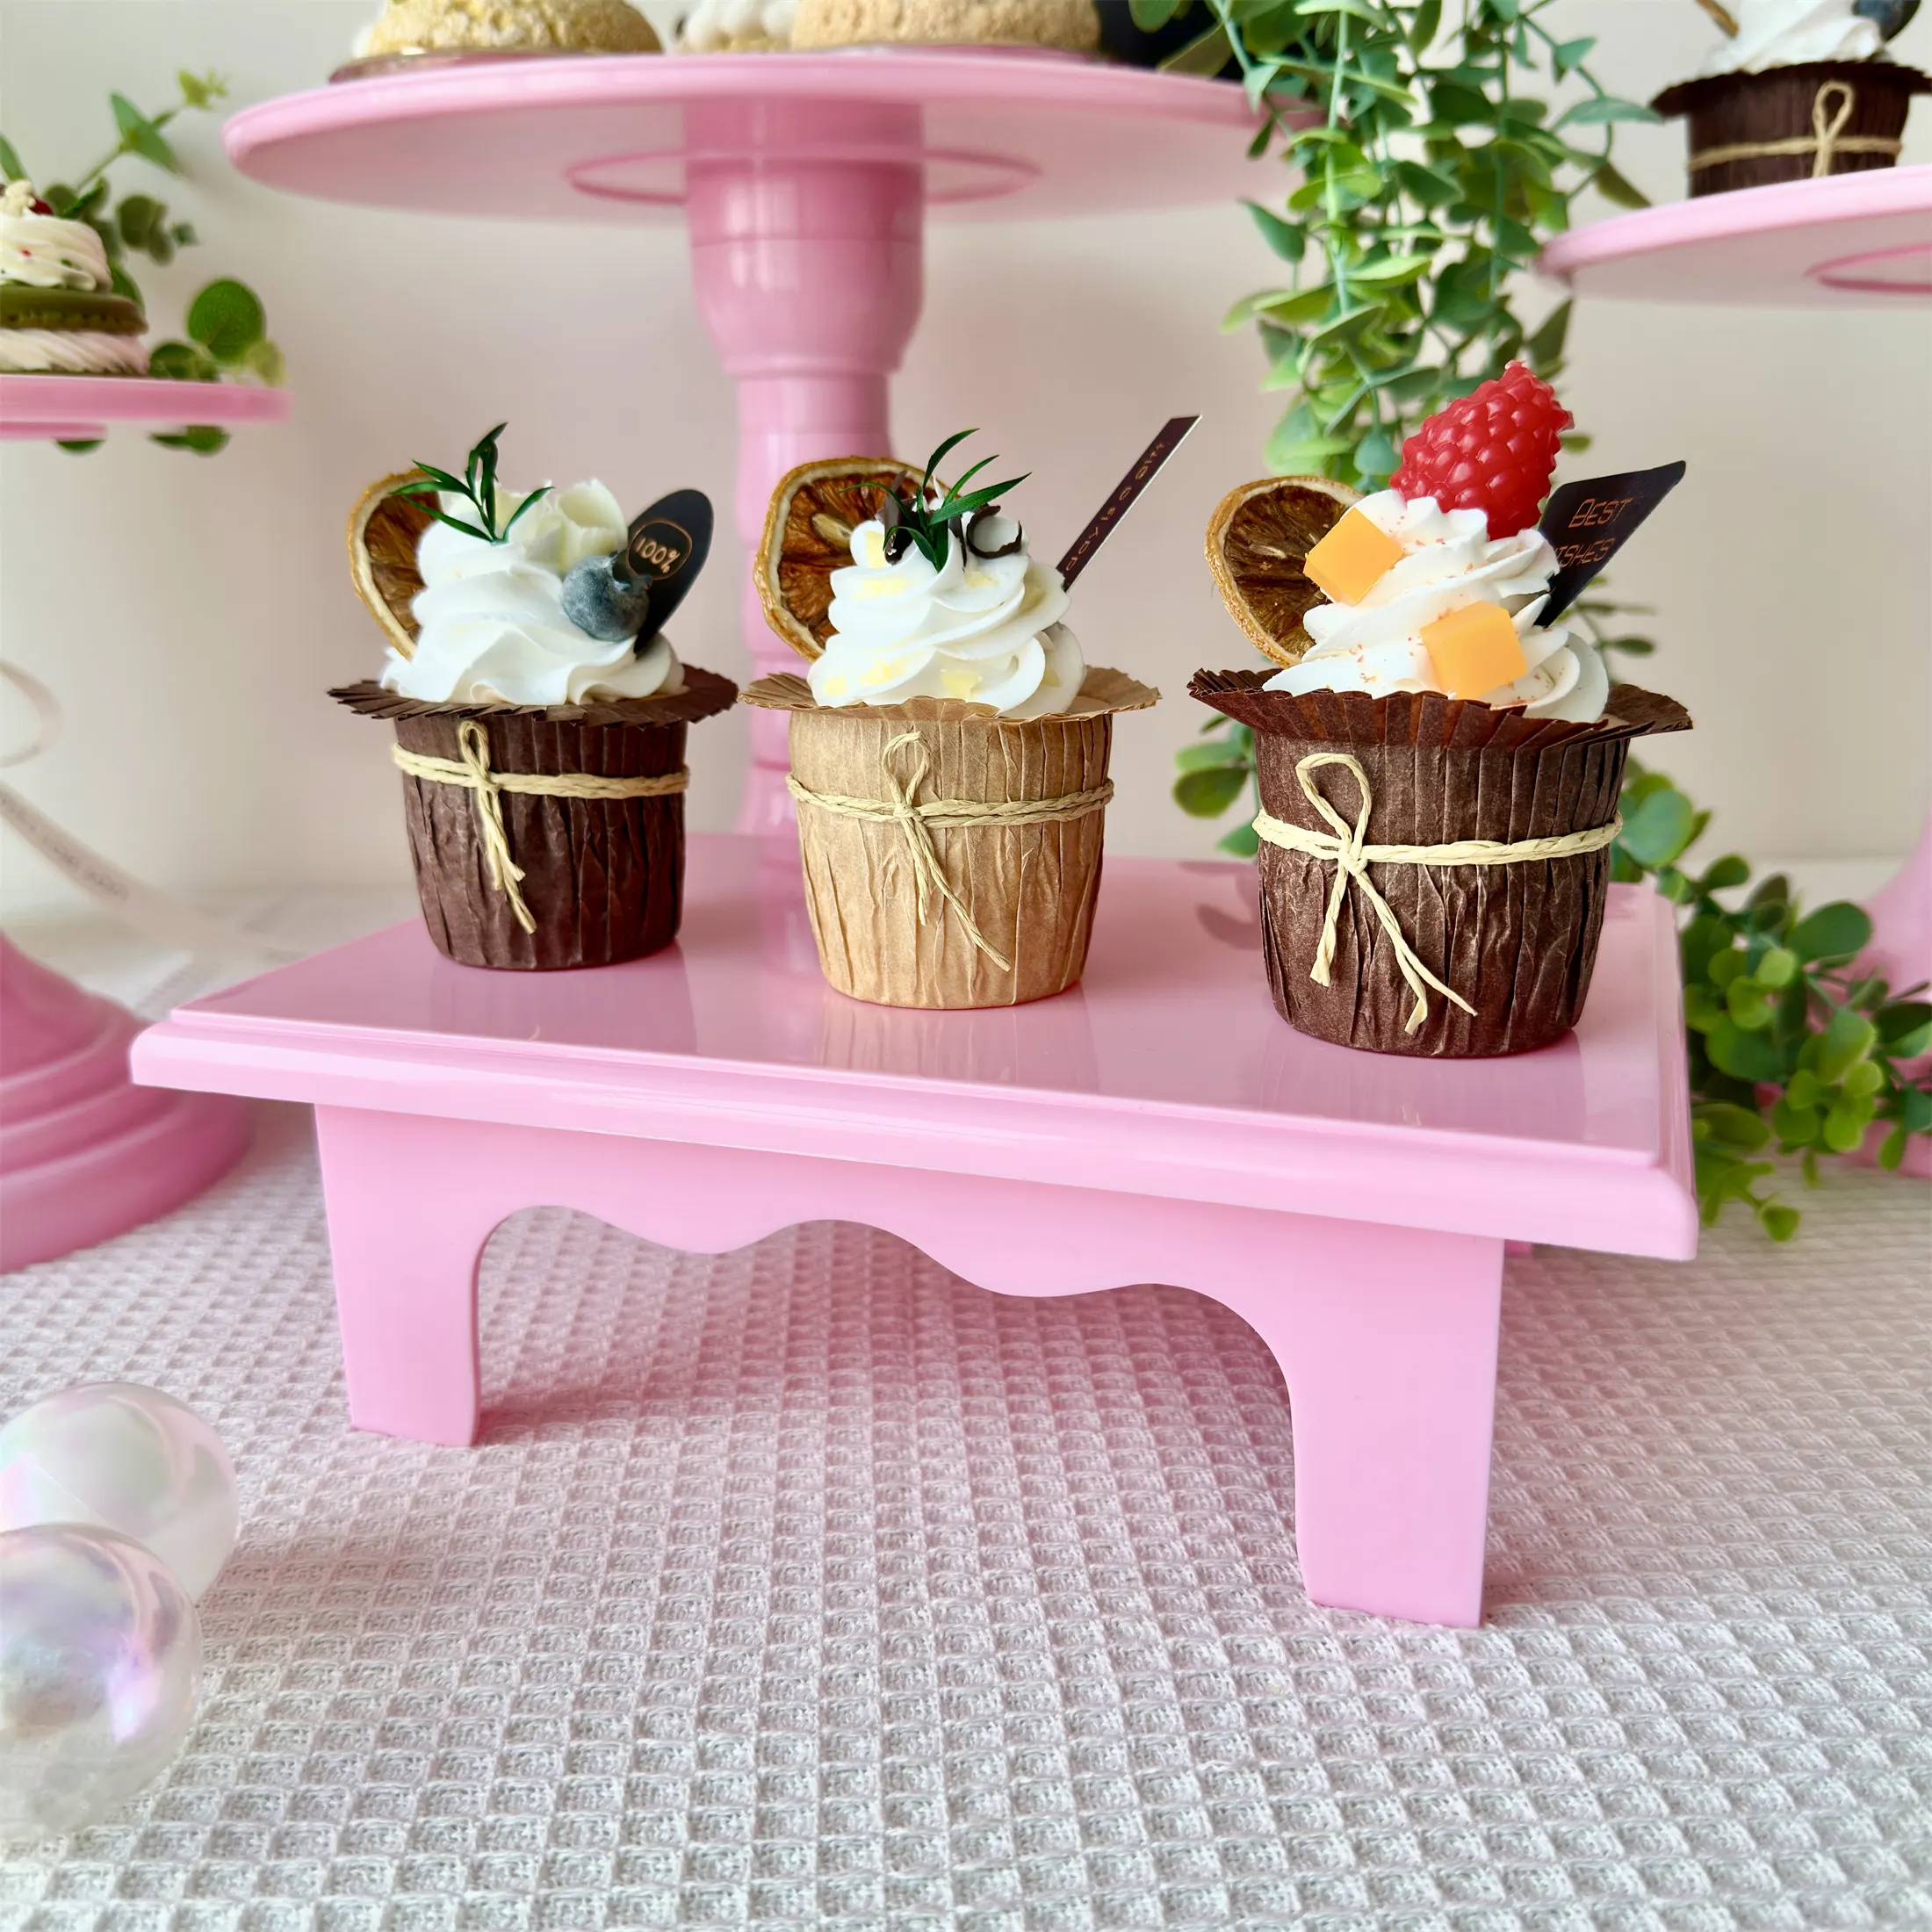 Vente en gros de supports colorés en carton pour cupcakes de mariage, vaisselle de fête, présentoir pour aliments, support pour gâteaux